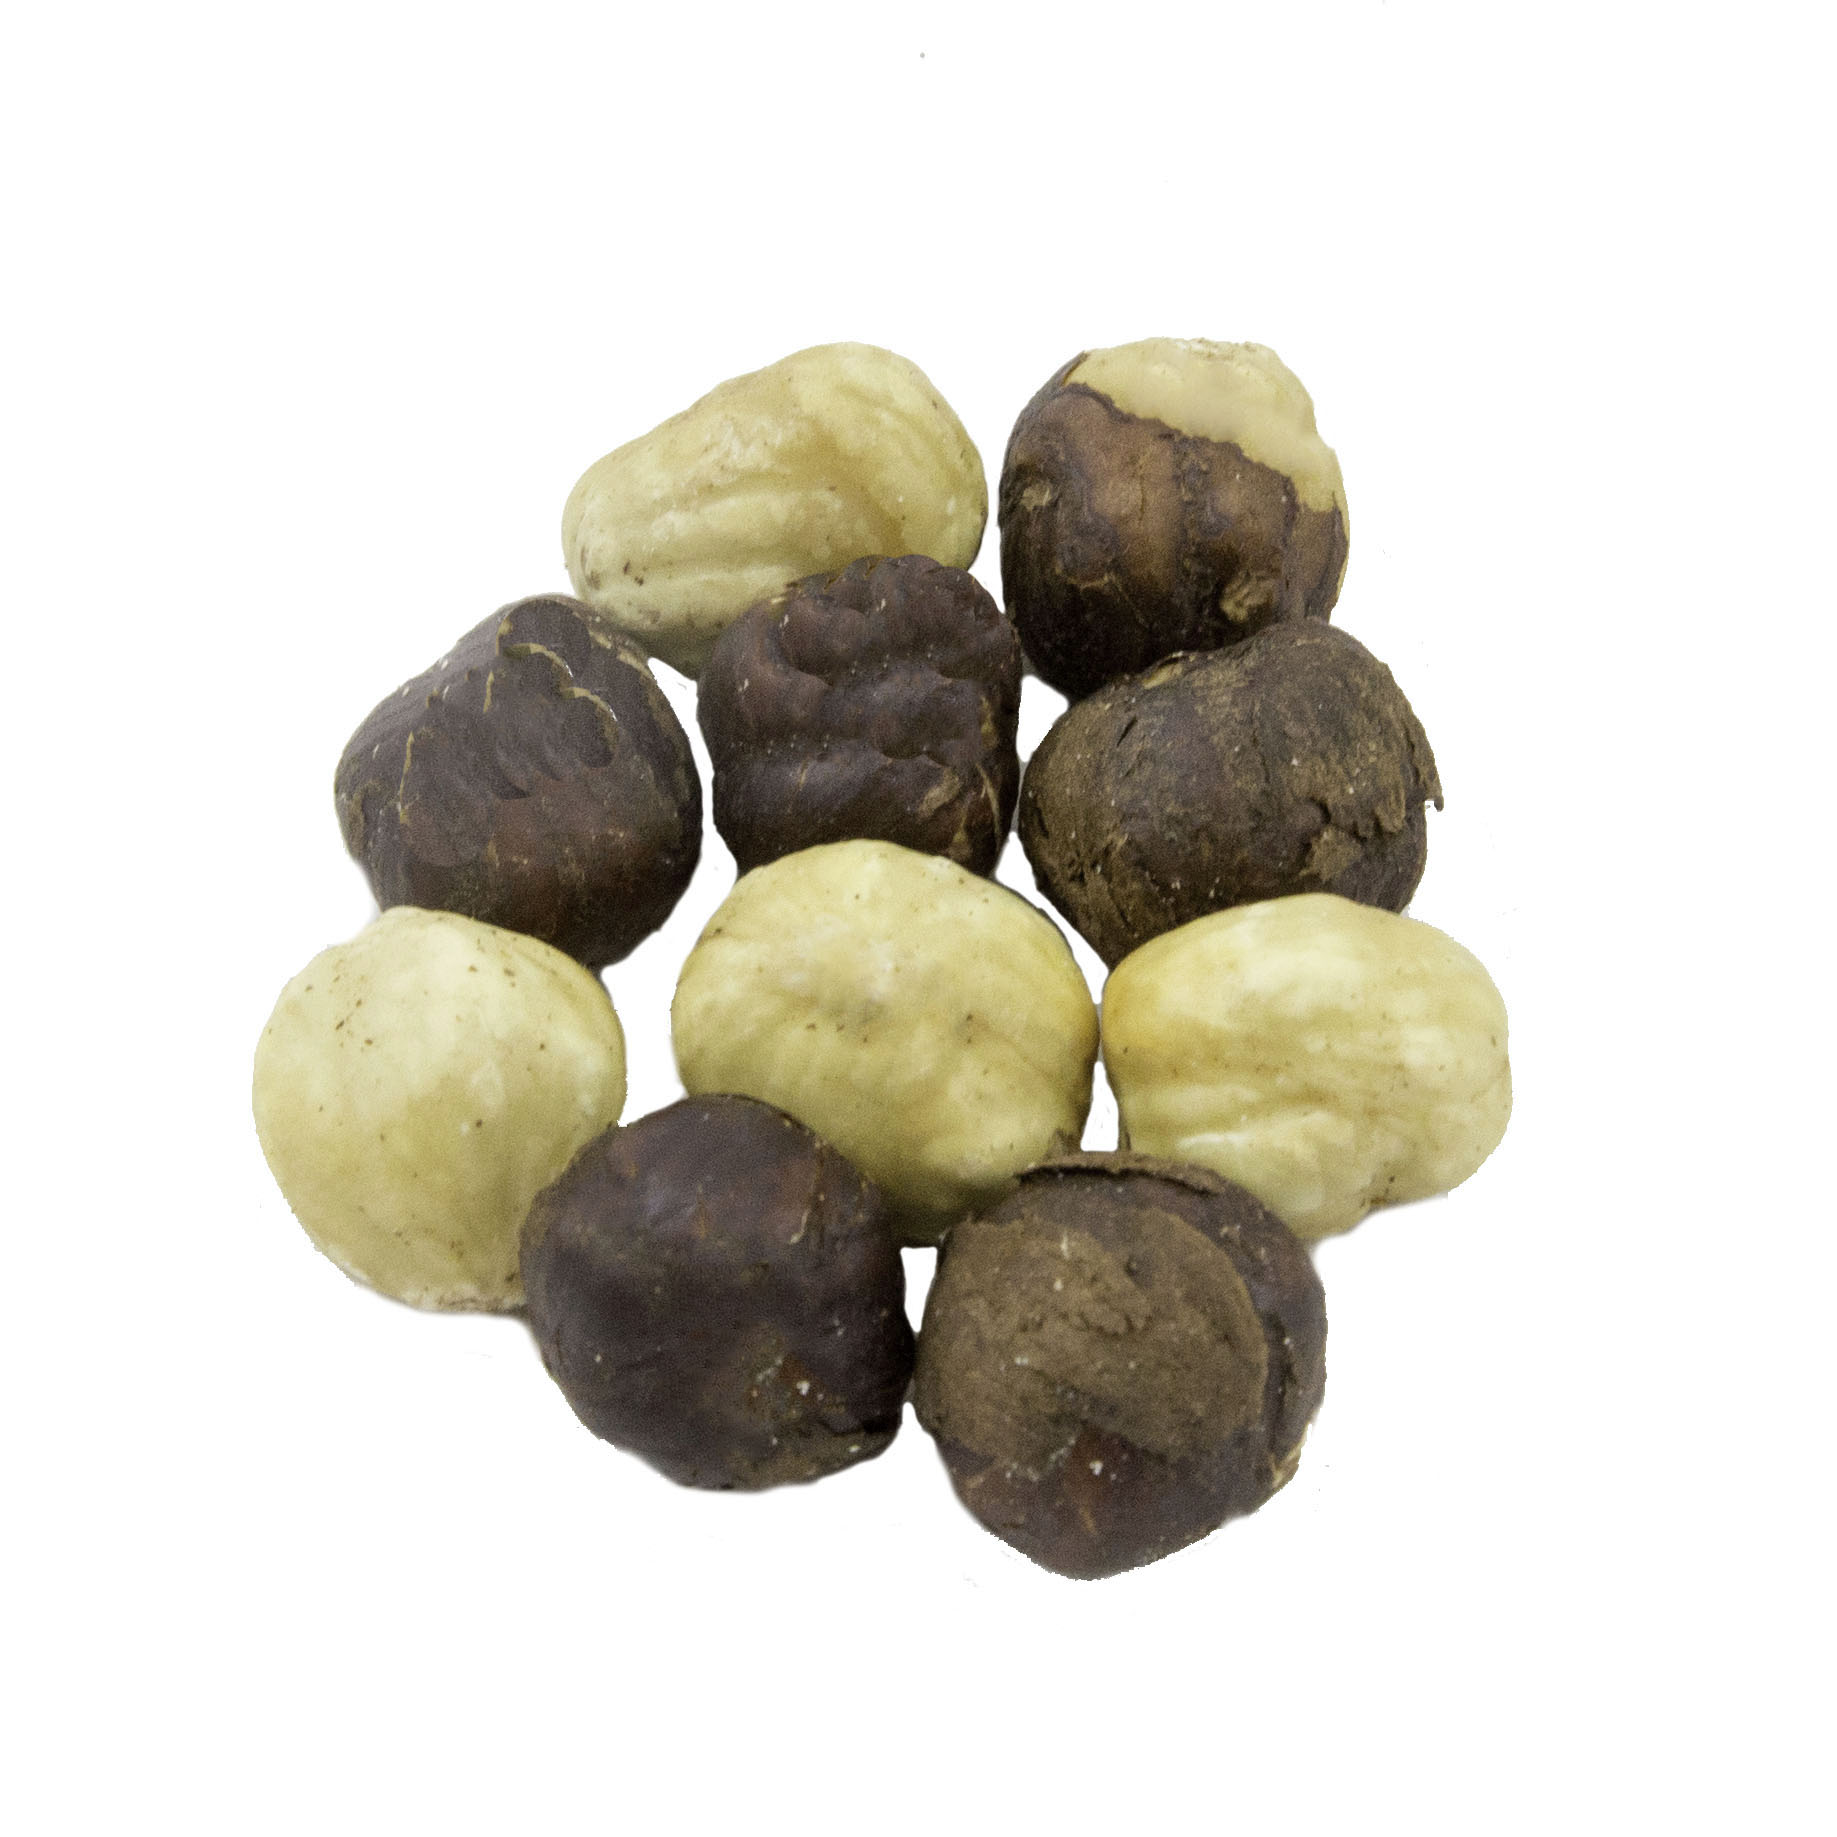 Roasted Filberts (Hazelnuts)